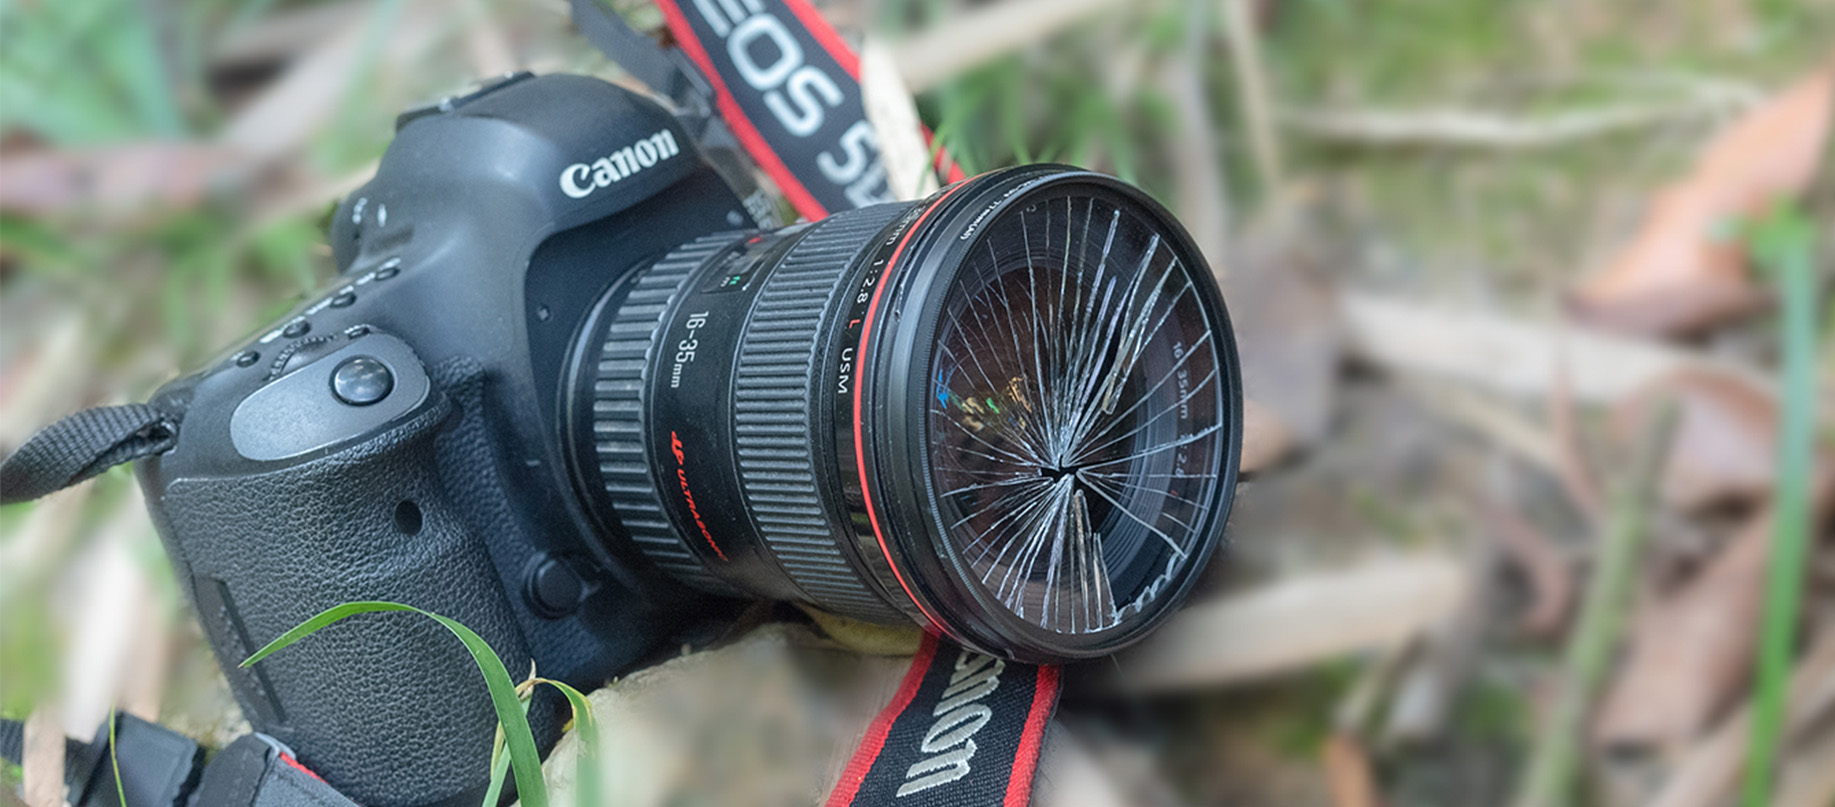 37mm camera uv filter